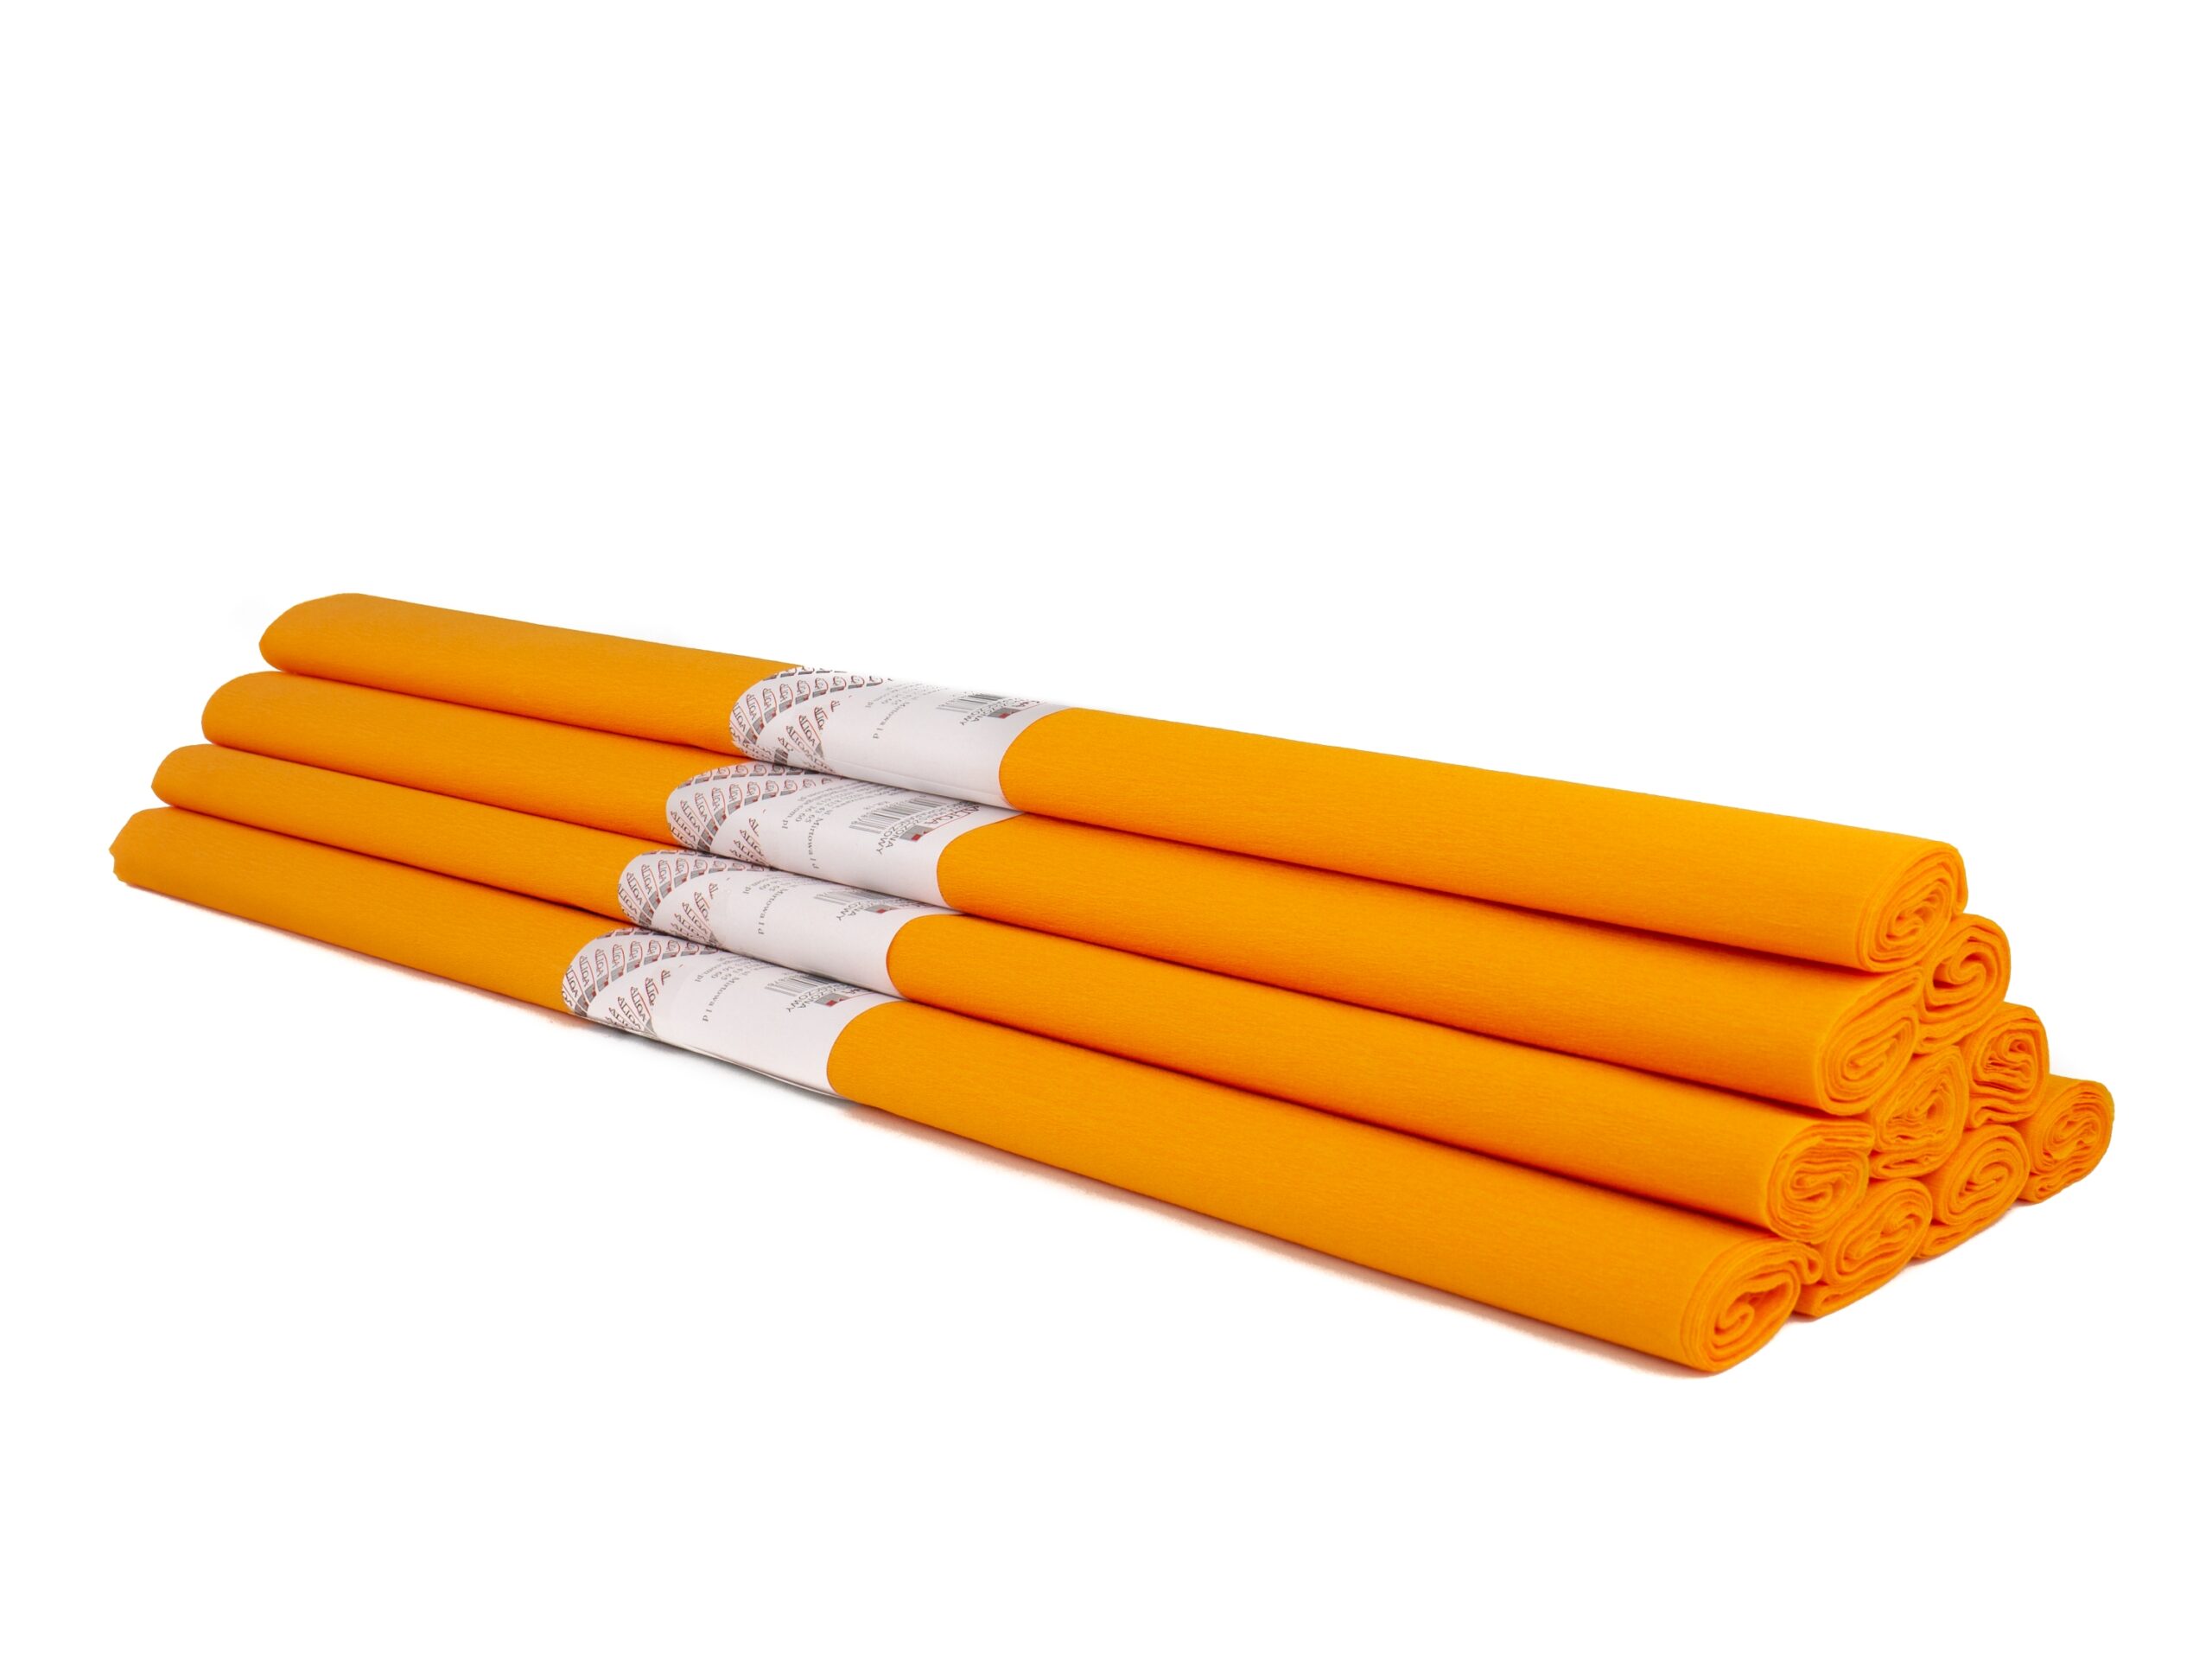 Krepinis popierius 50cmx2m šviesiai oranžinis KR-18 ALIGA, B06-6807